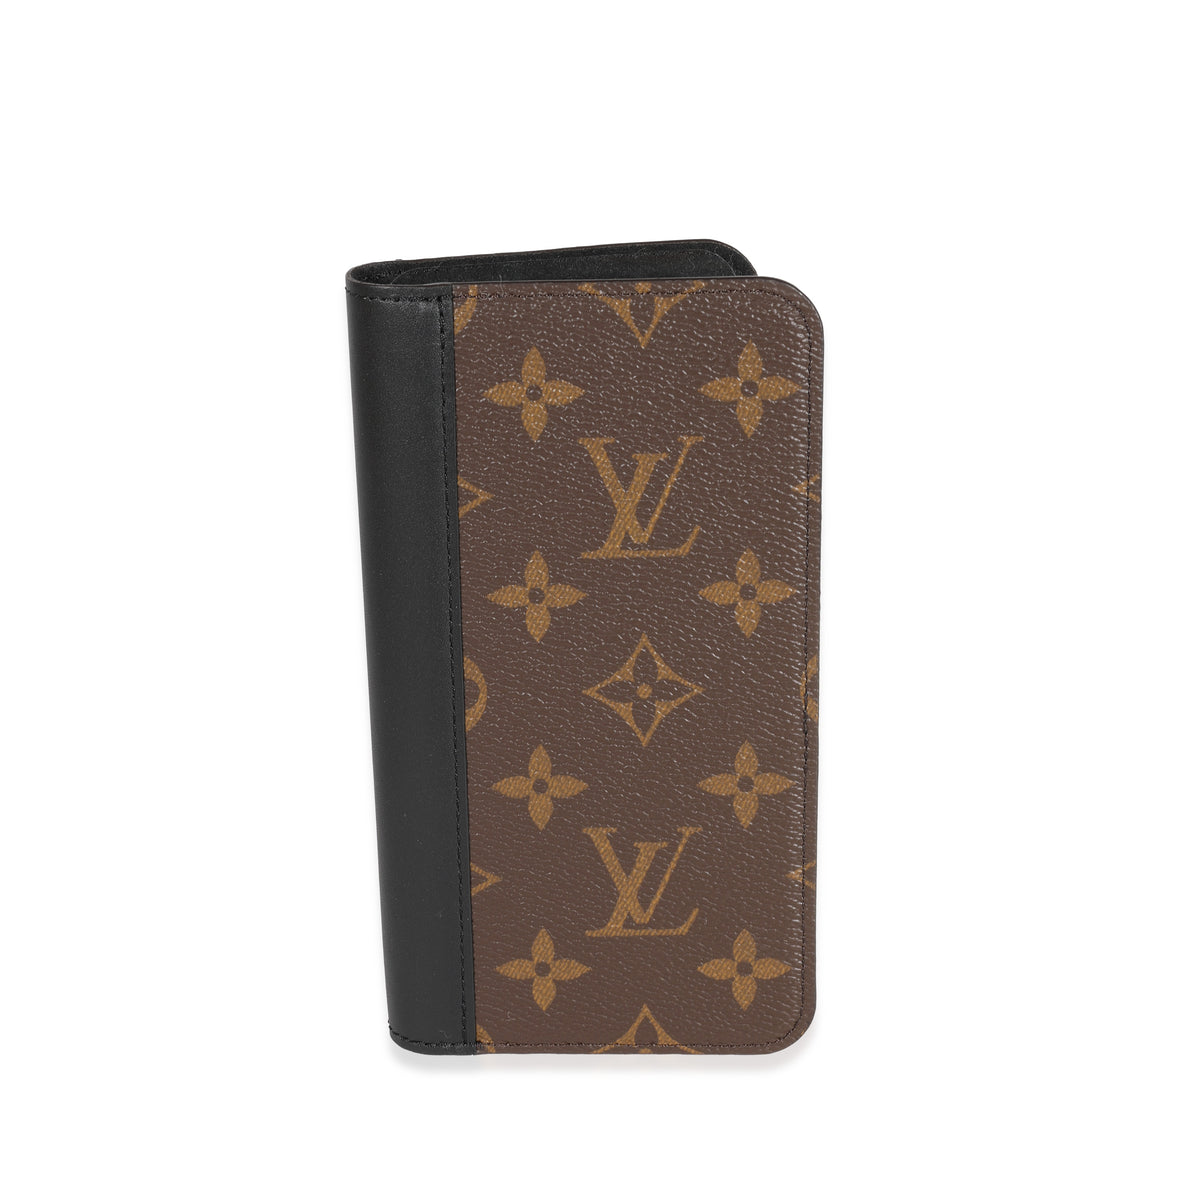 Vintage Louis Vuitton brown monogram key case. Classic unisex